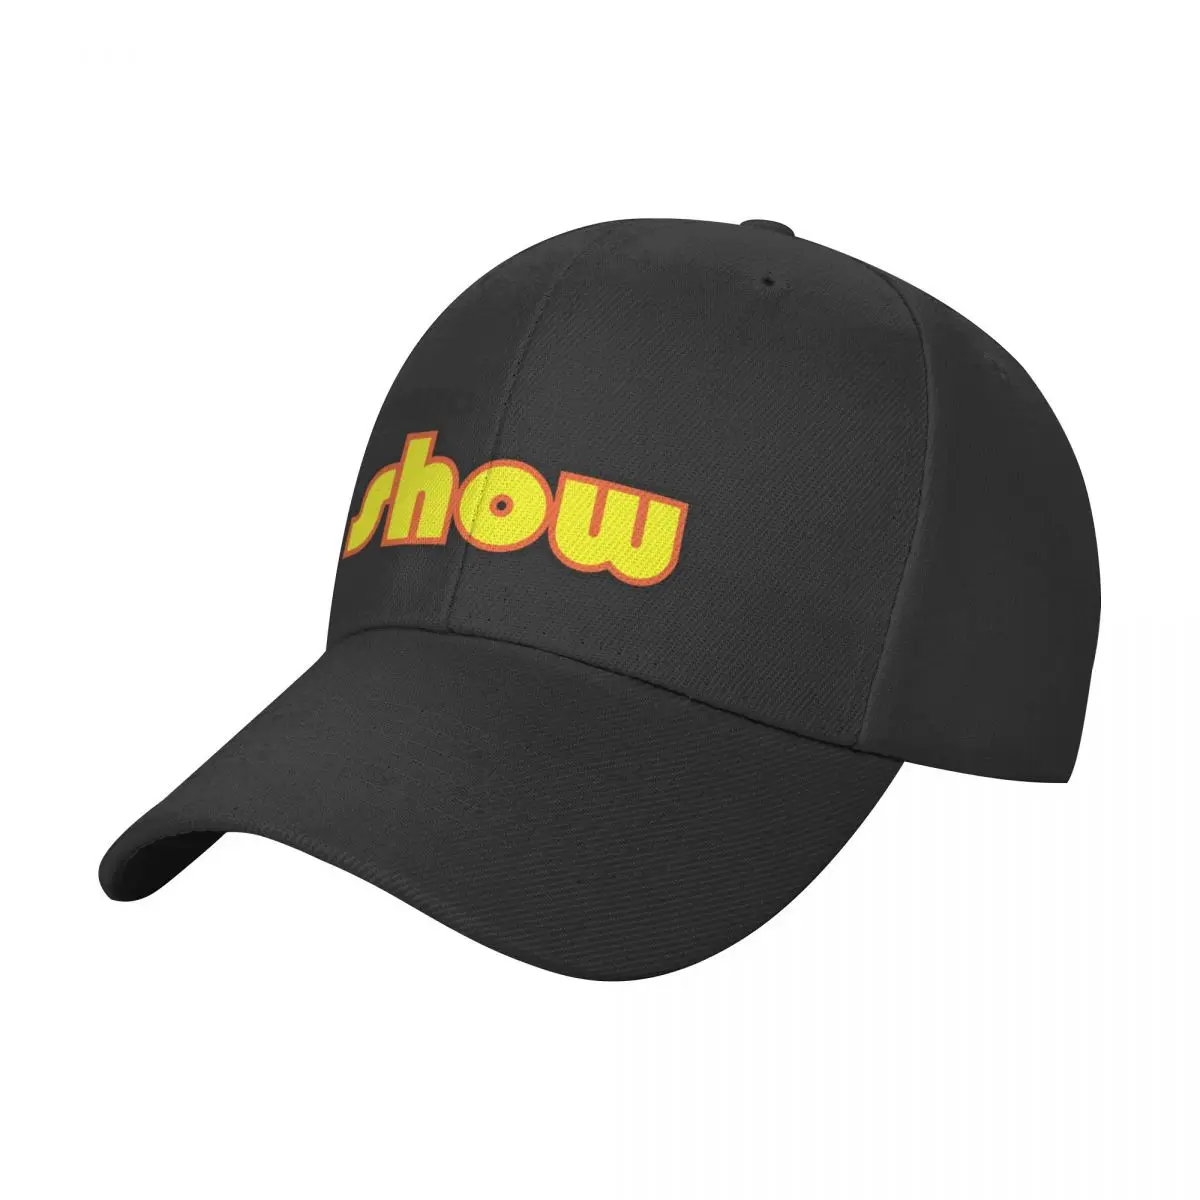 Логотип OG будет хорошо смотреться со светлыми цветами Бейсбольная кепка Дизайнерская шляпа Новая шляпа Женские шляпы мужские